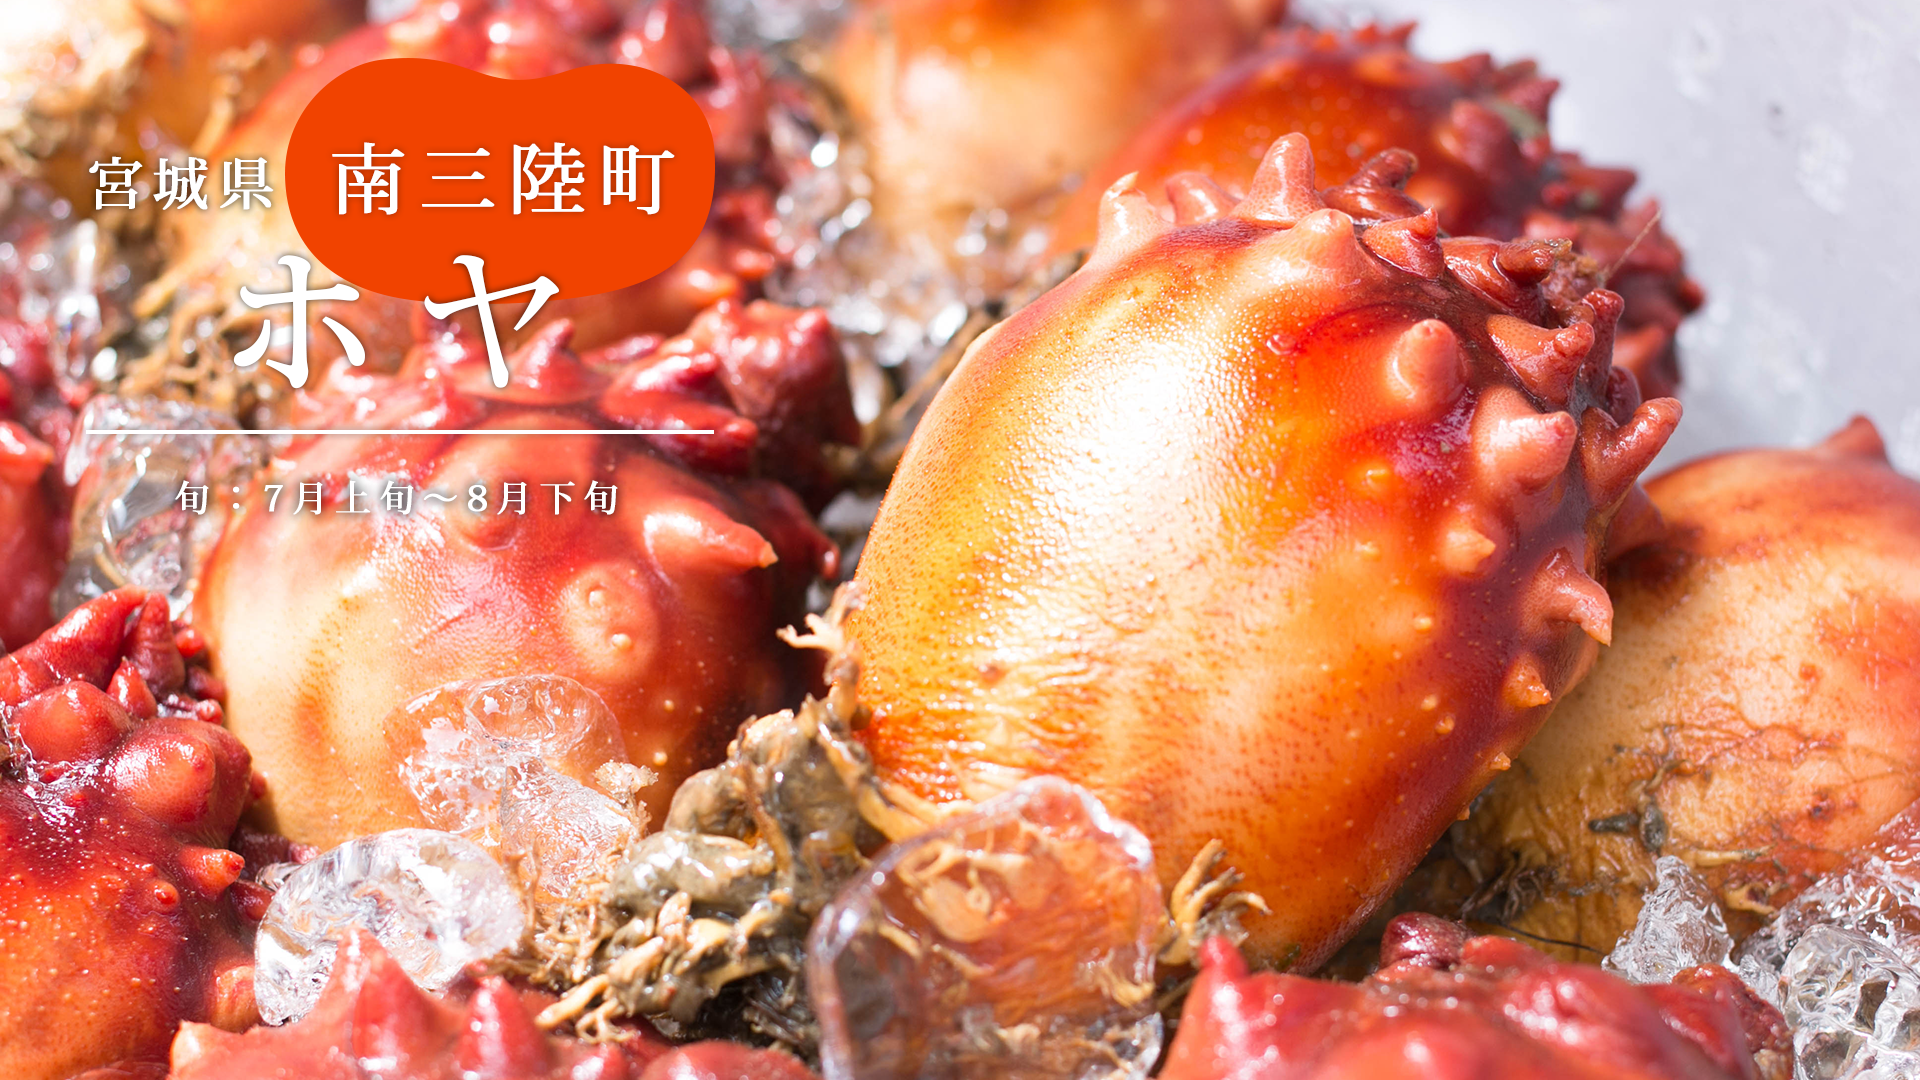 最盛期到来 肉厚な身 と 甘さ がおいしい宮城産 ホヤ 旬の魚 さかな通信 By Uopochi